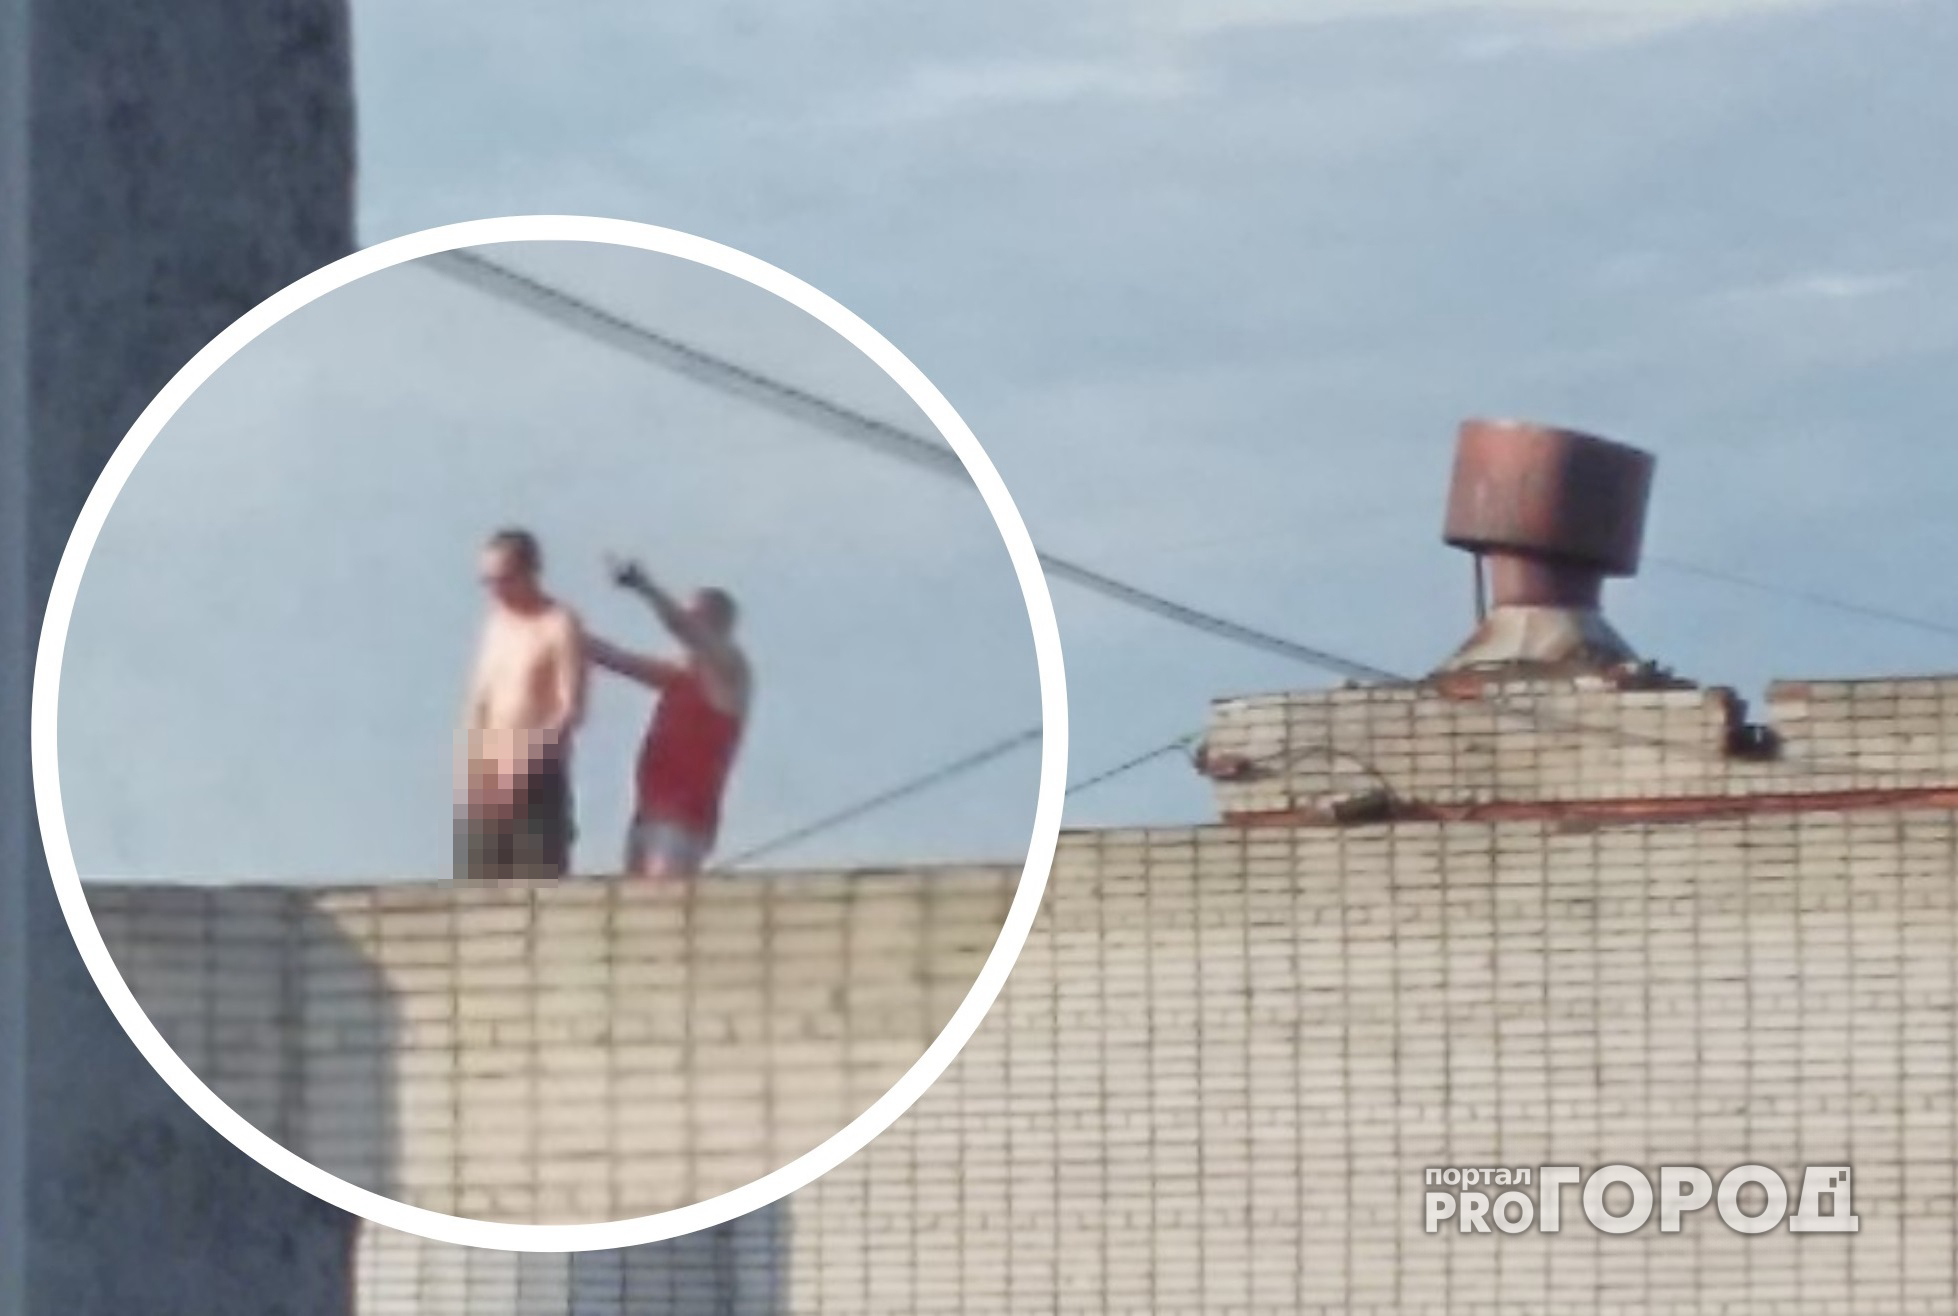 В Чувашии мужчины мочились с крыши дома на балконы и прохожих